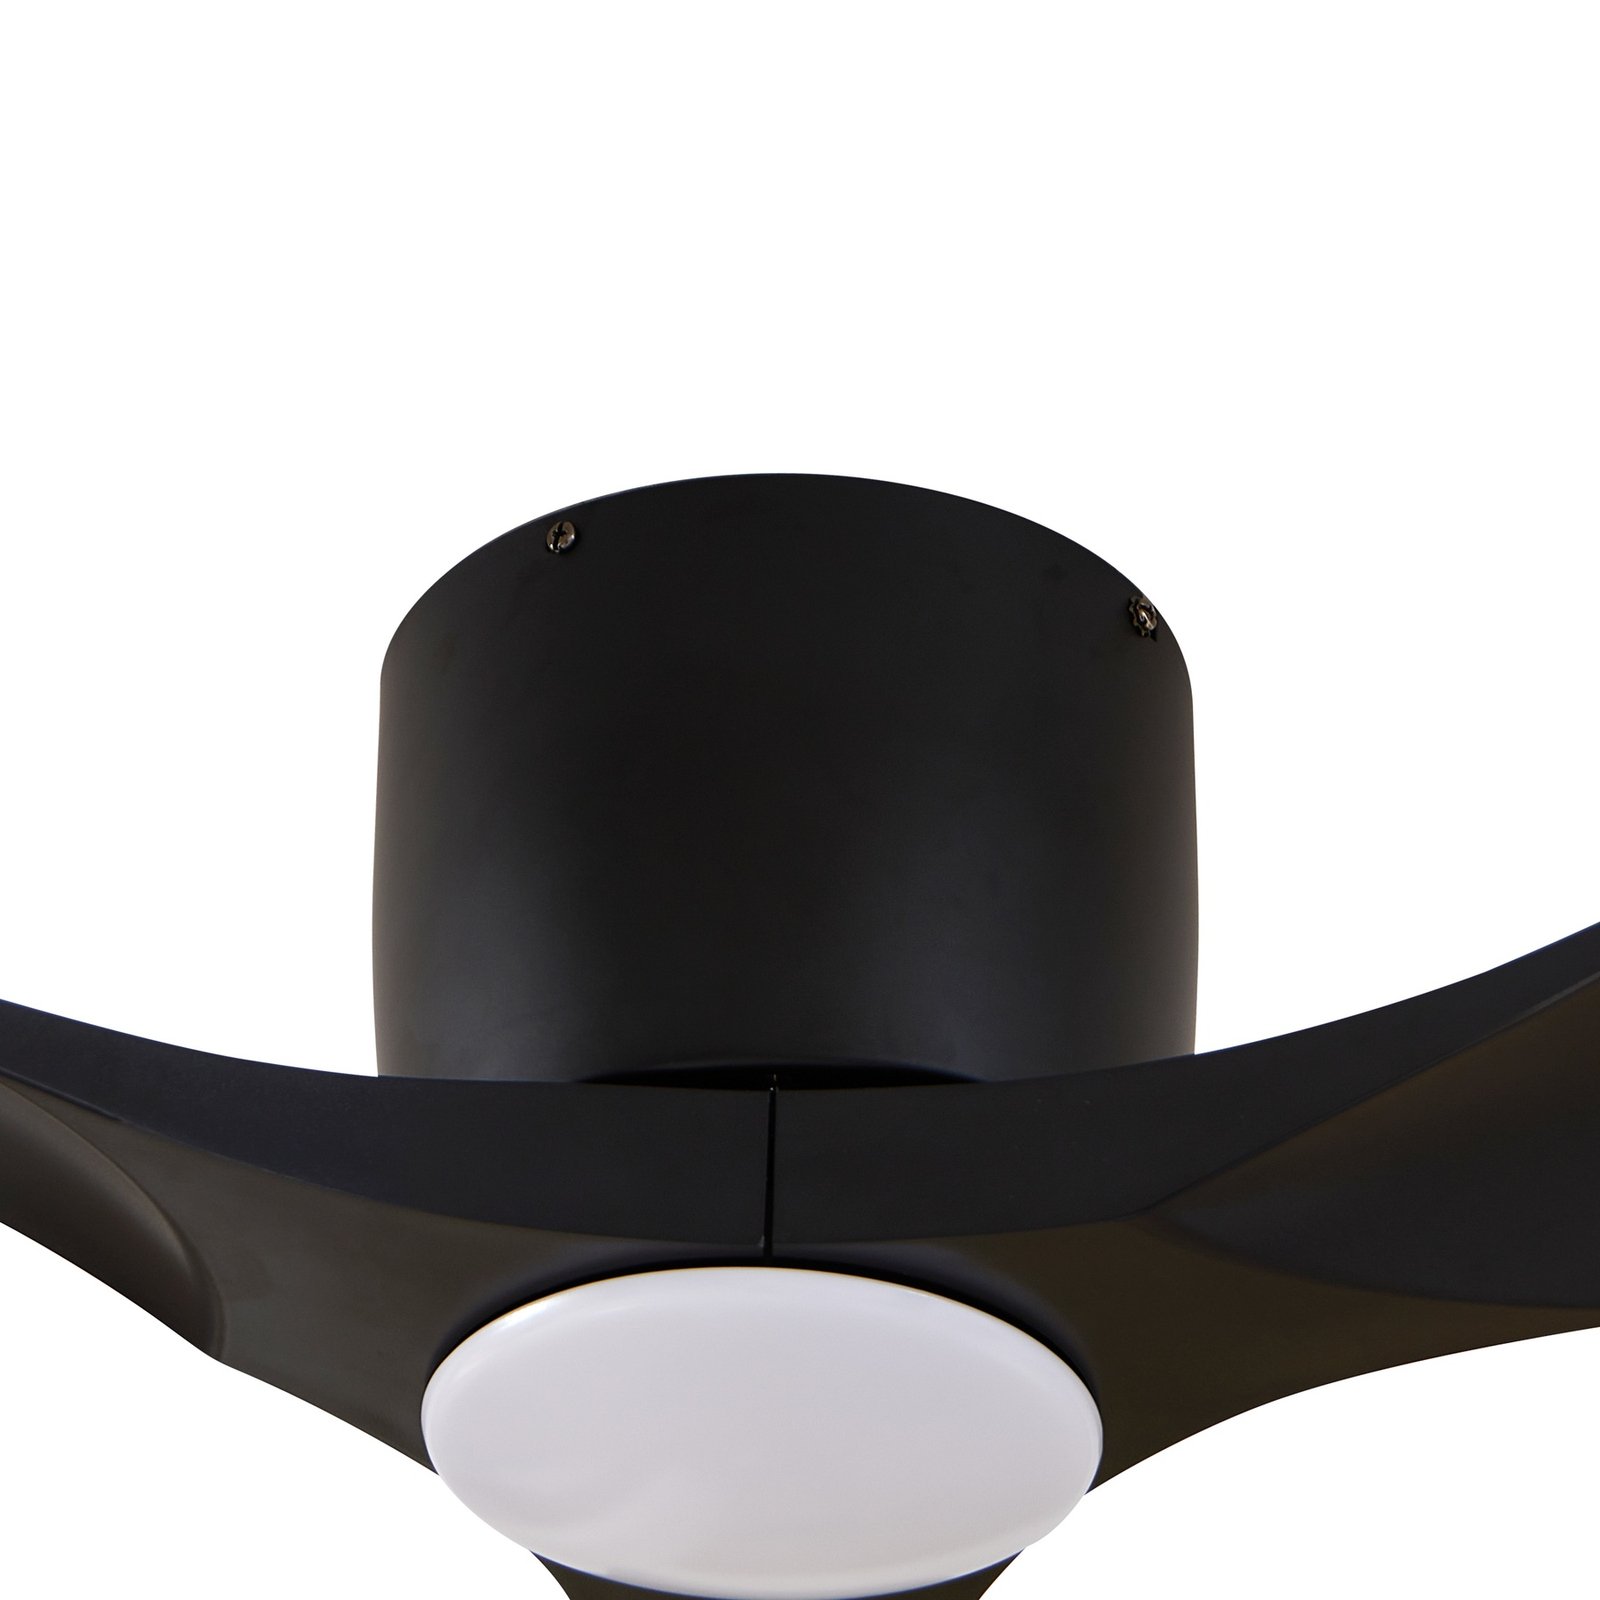 Stropný ventilátor Lucande LED Moneno, čierny, DC, tichý